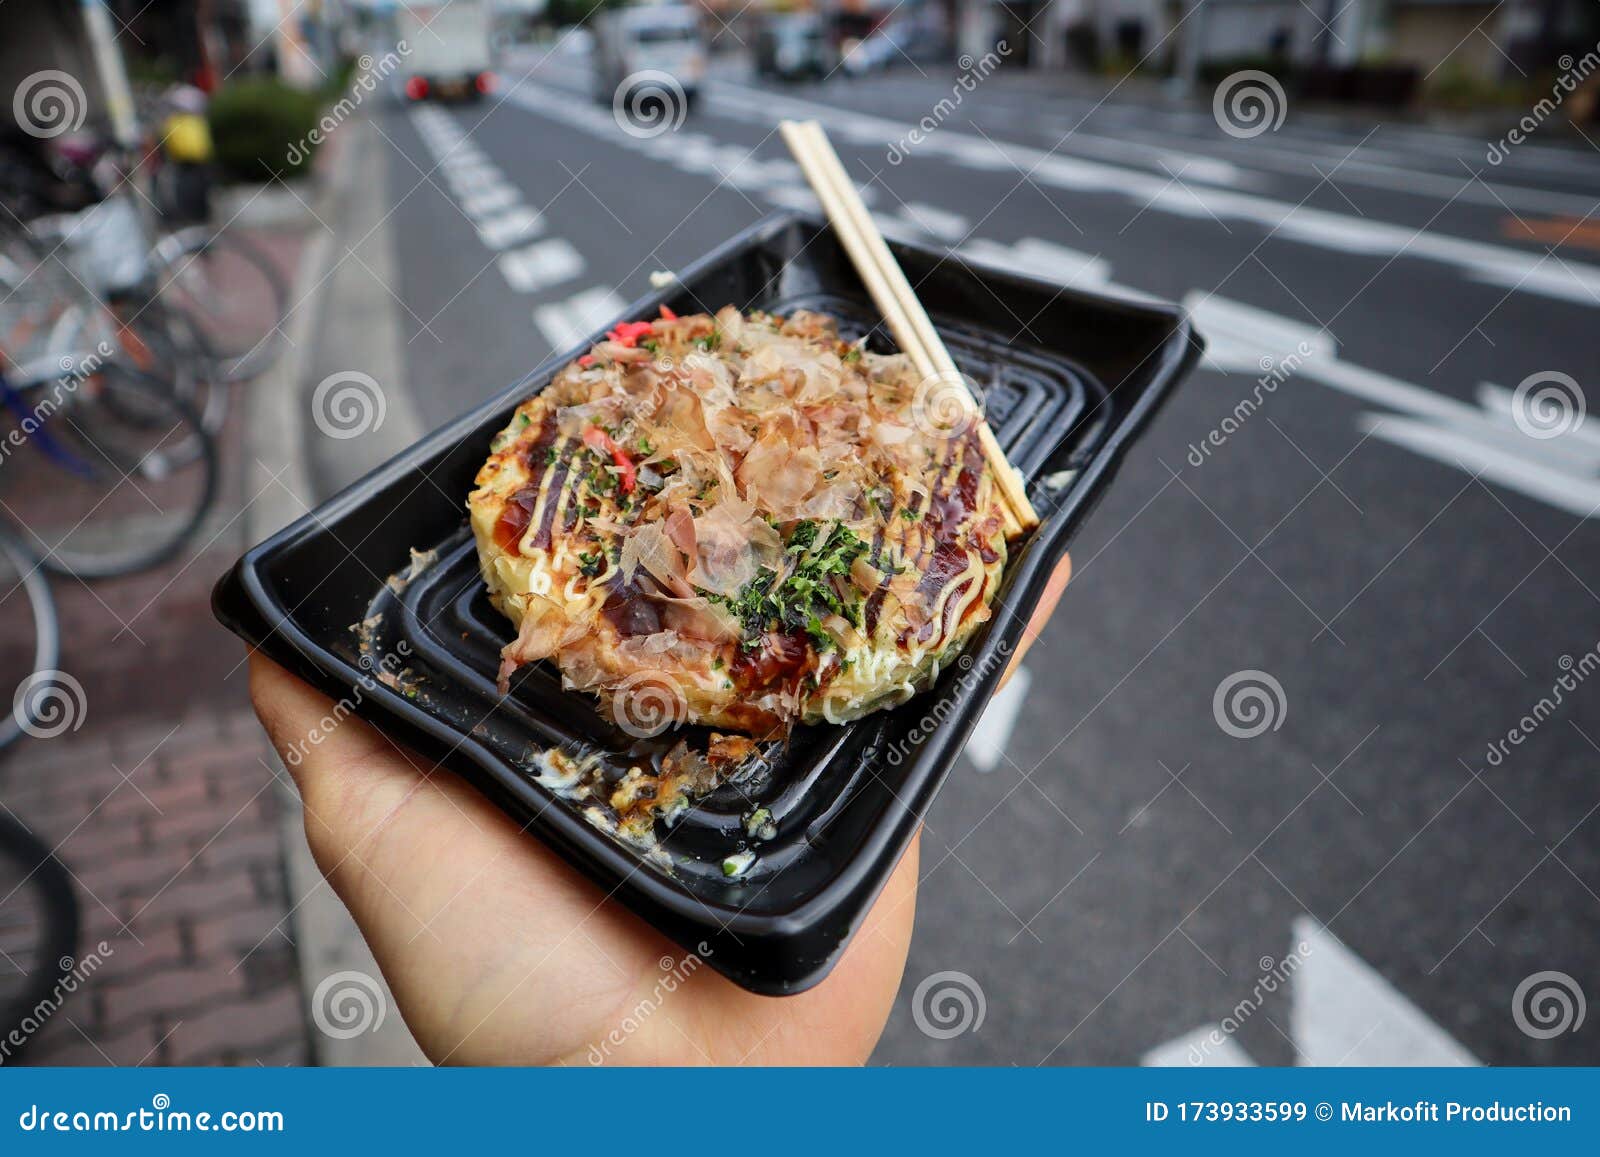 японская пицца окономияки рецепт фото 106